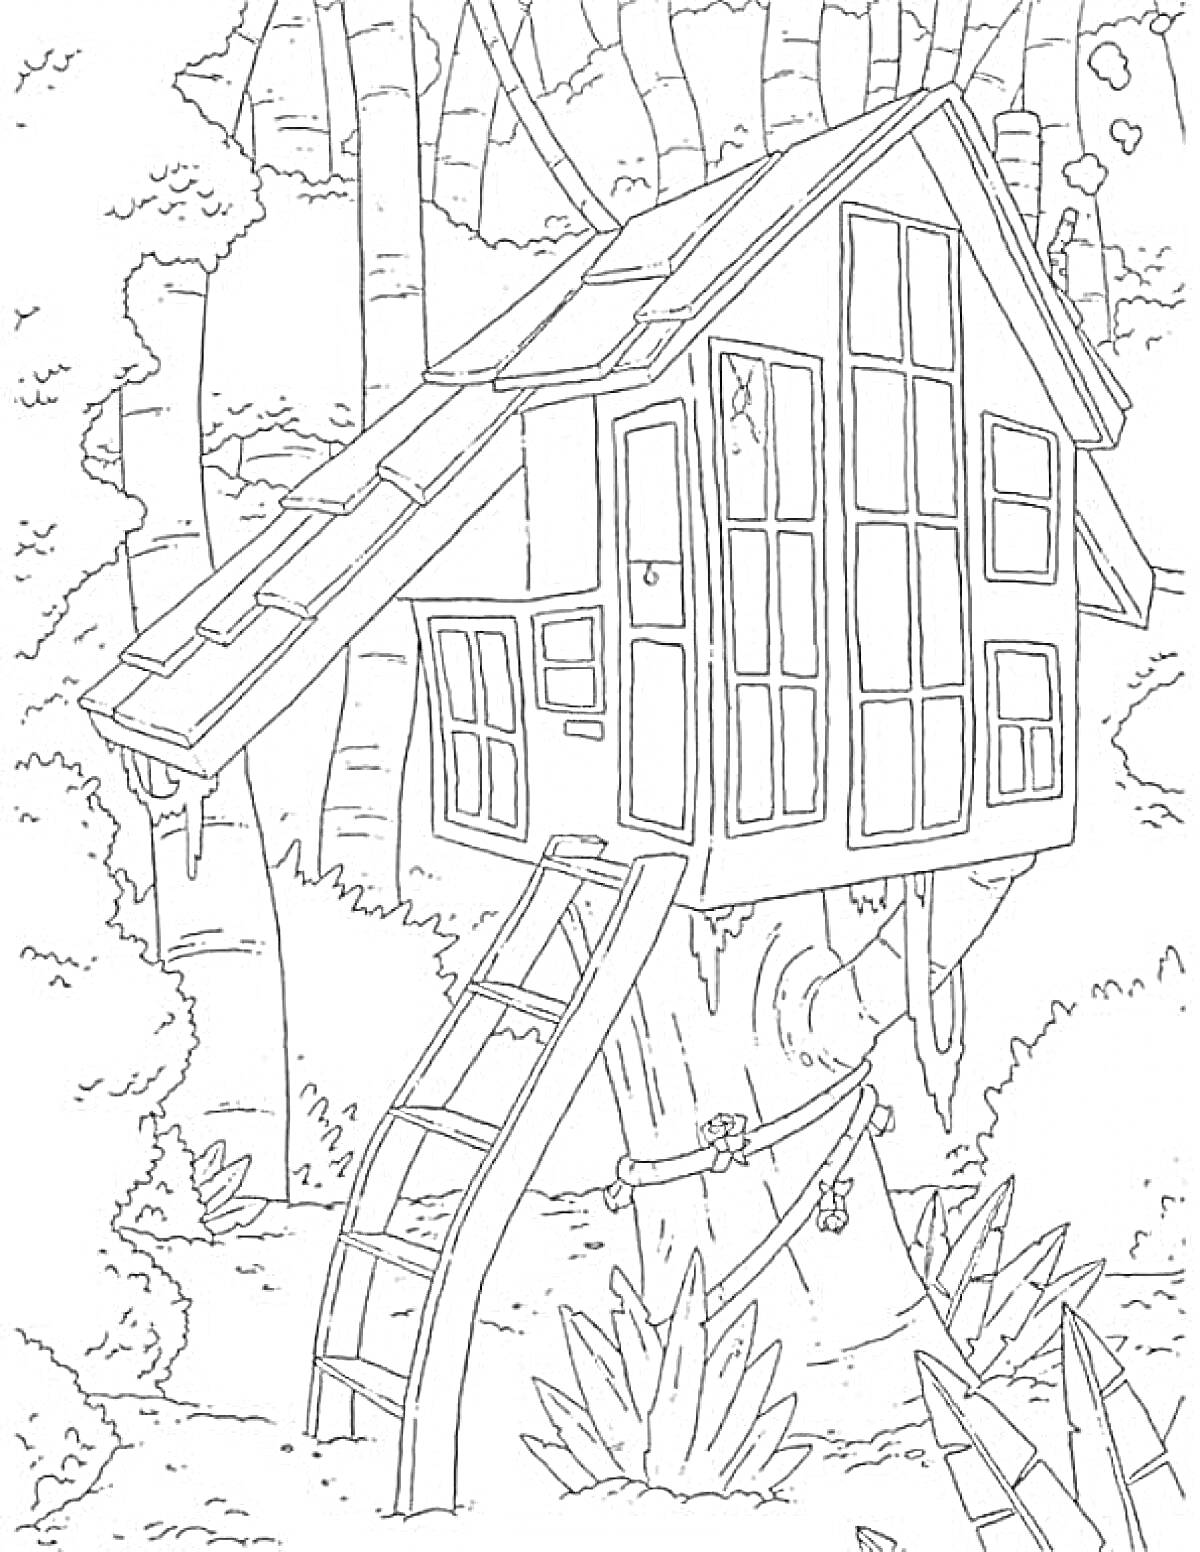 Домик на дереве с лестницей, окнами и дверью в лесу